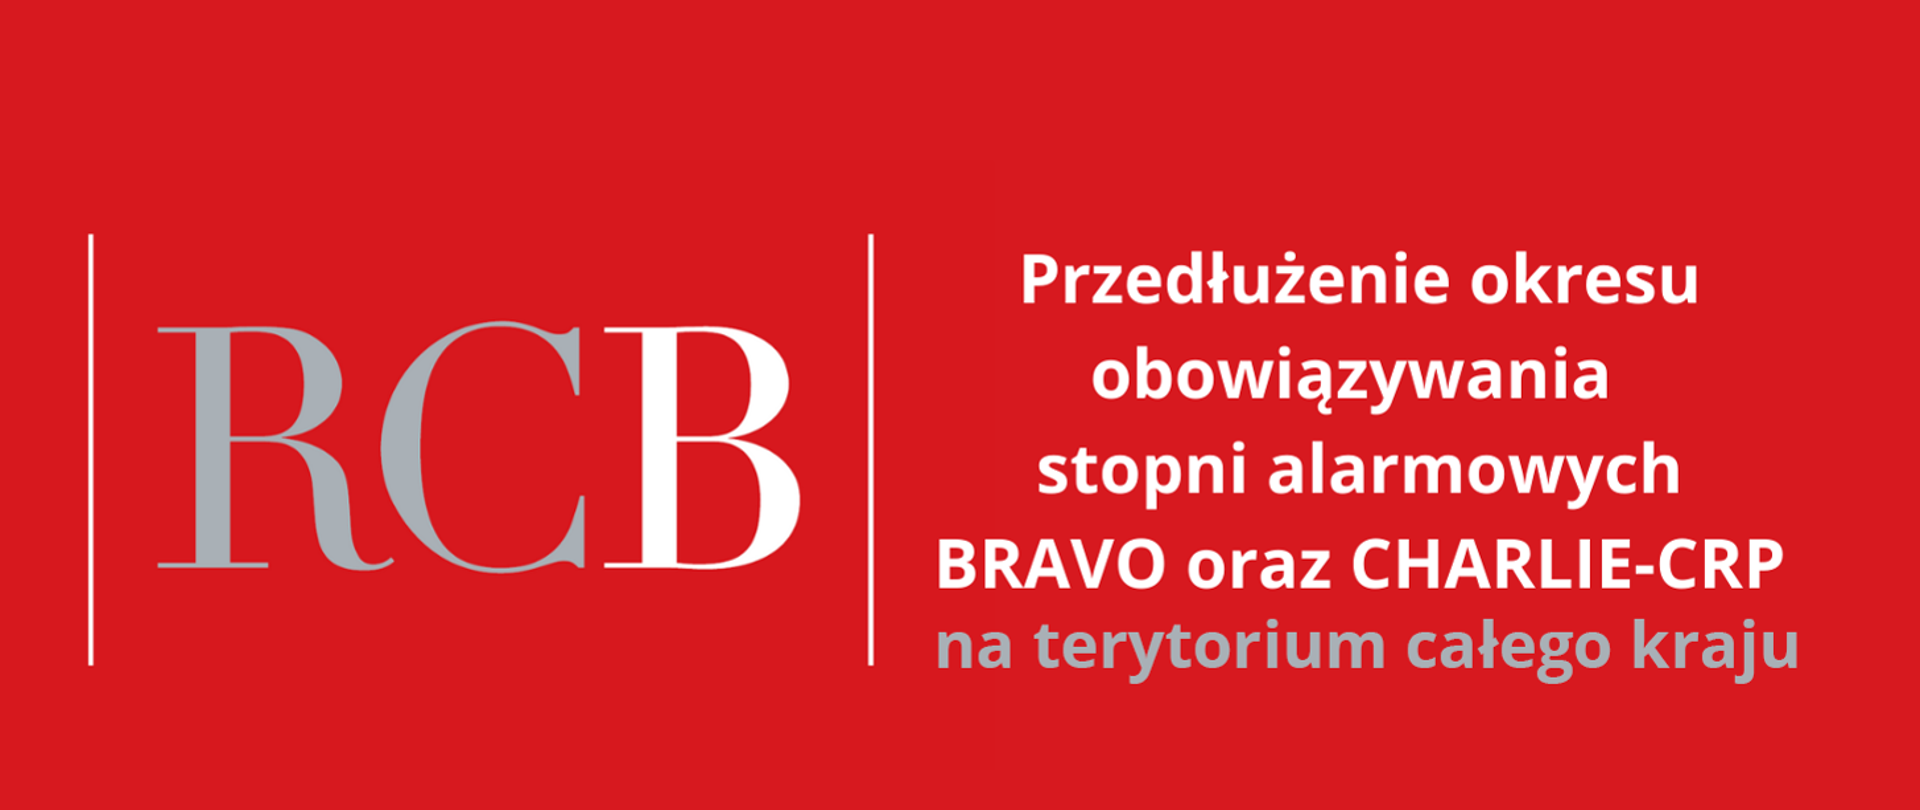 Grafika na czerwonym tle po lewej napis RCB przedzielony pionowymi kreskami, po prawej tekst:"Przedłużenie okresu obowiazywania stopni alarmowych BRAVO oraz CHARLIE-CRP na terytorium całego kraju."